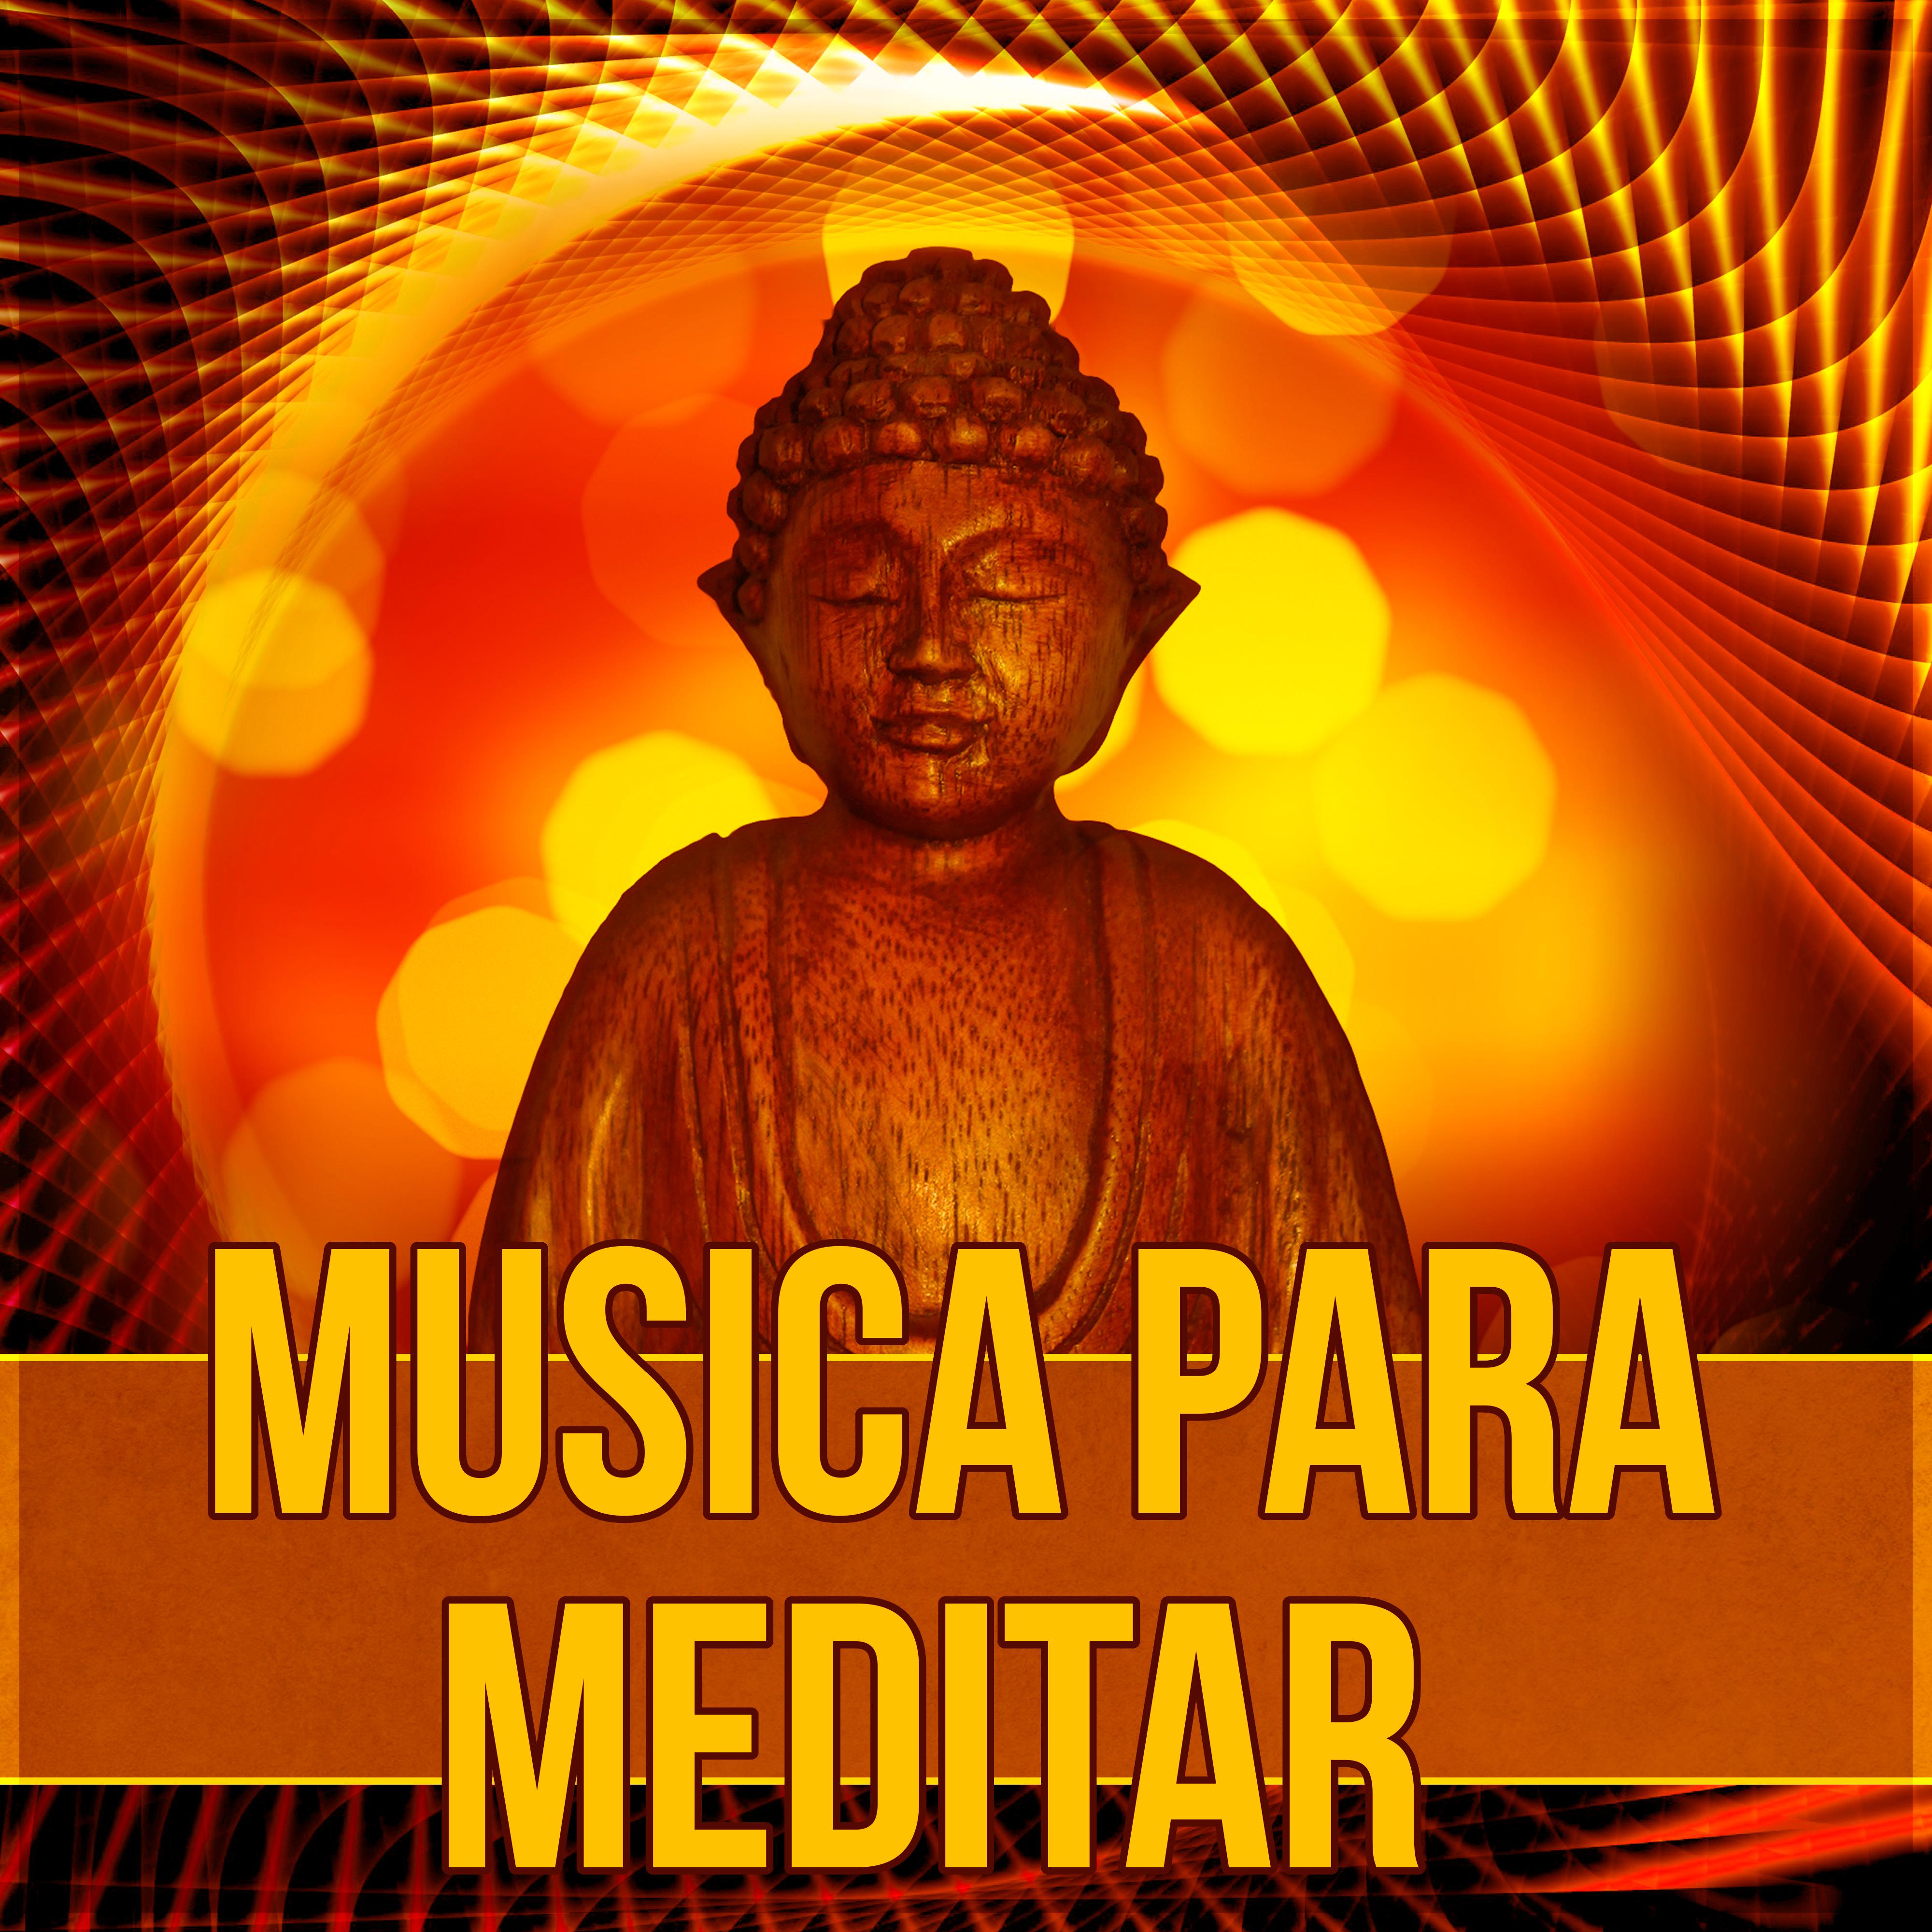 Musica para Meditar  Relajacion, Practicar Yoga, Musica Ambiente, Musica Instrumental, Masaje, Reiki, Zen, Spa, Massage, Meditacion